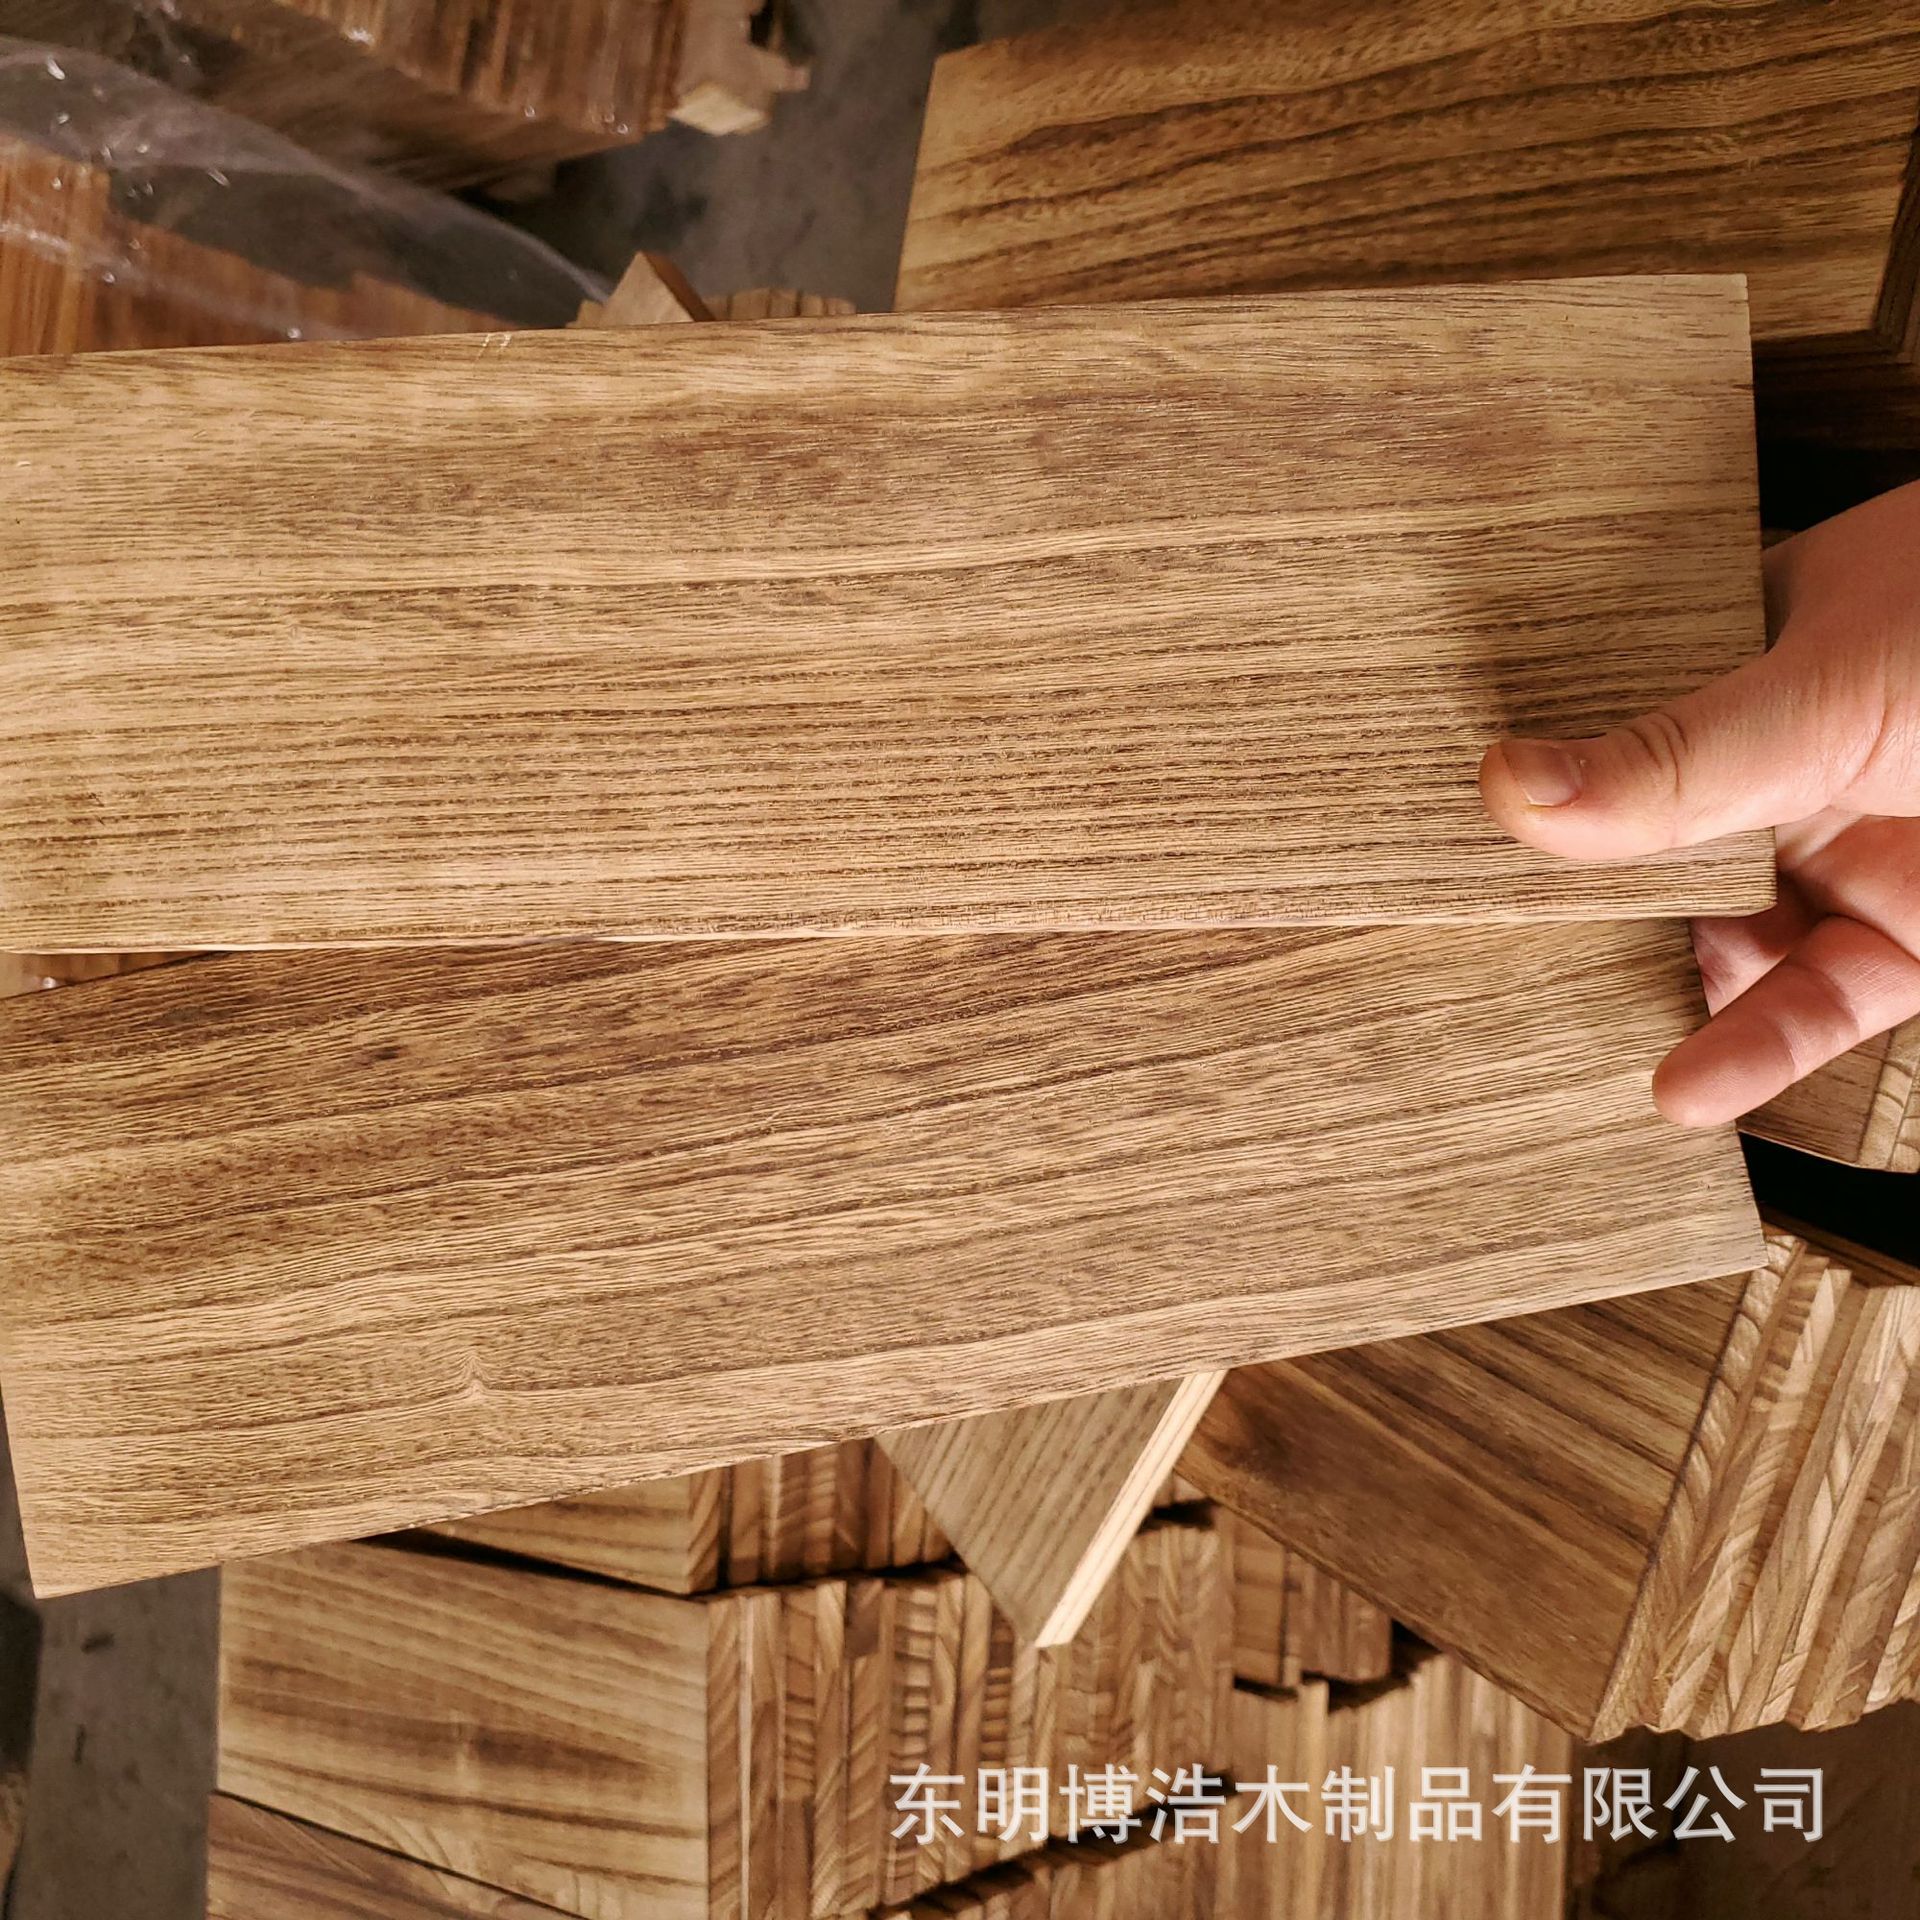 厂家直销桐木碳化板实木家具装饰拼板工艺品材料多规格可定